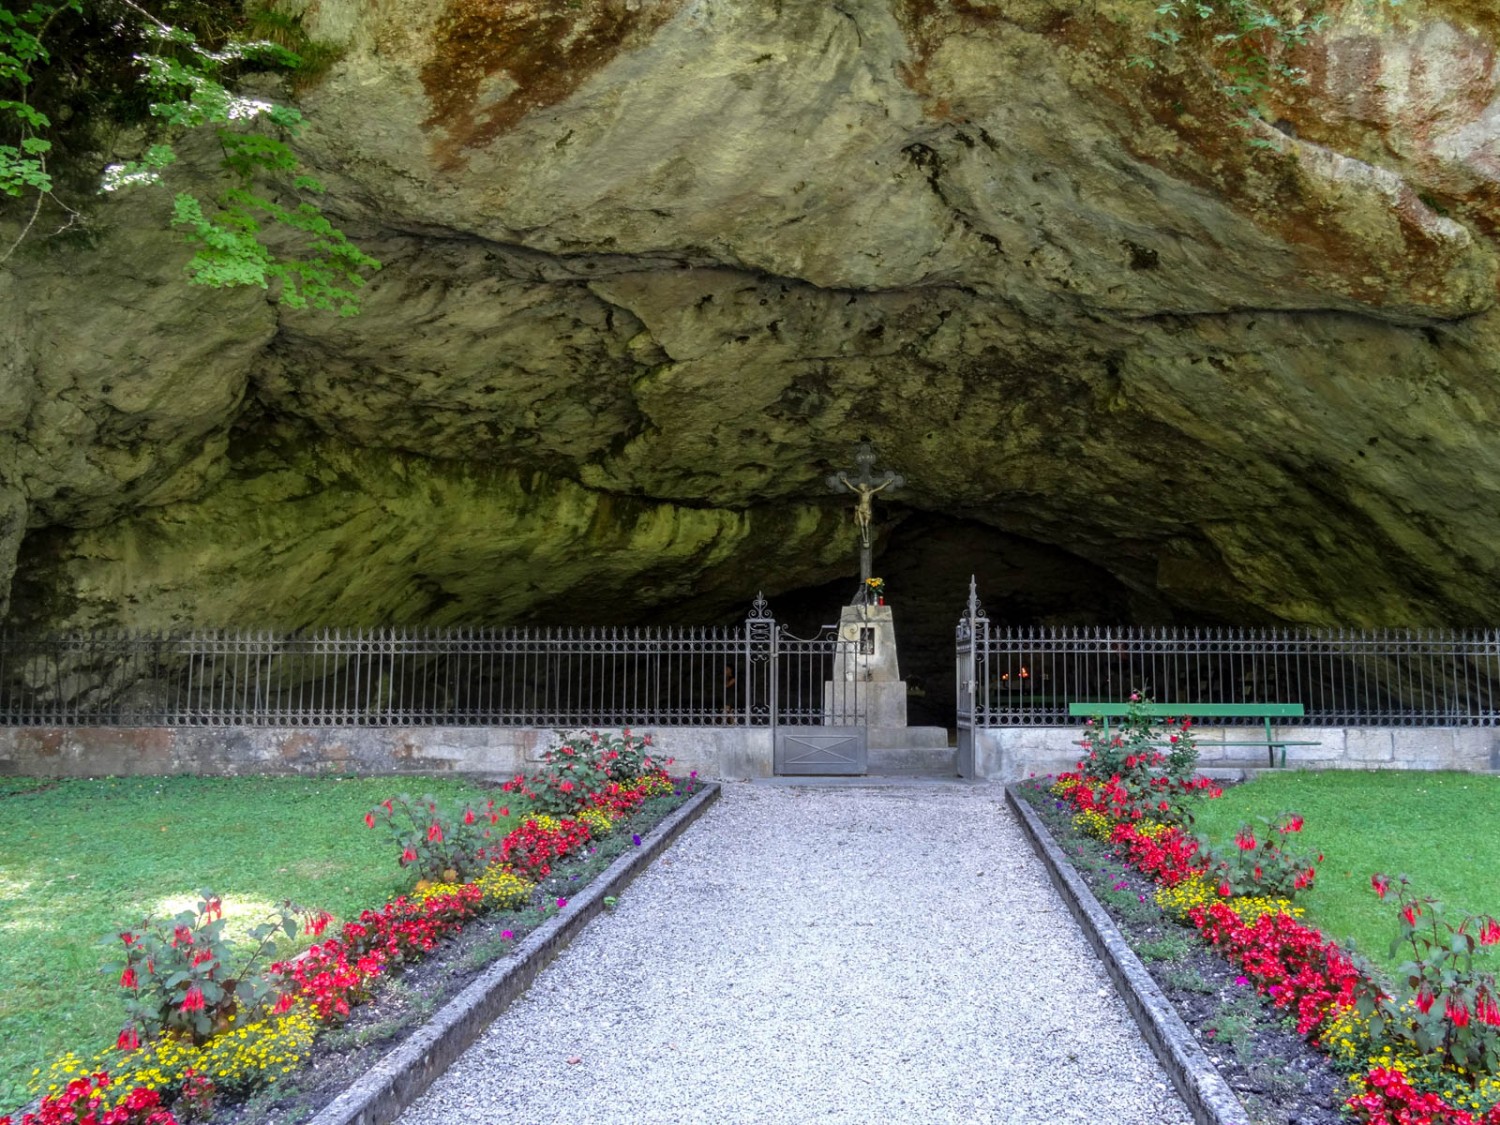 L’entrée et la grotte sont entretenues avec amour. Photo: Vera In-Albon